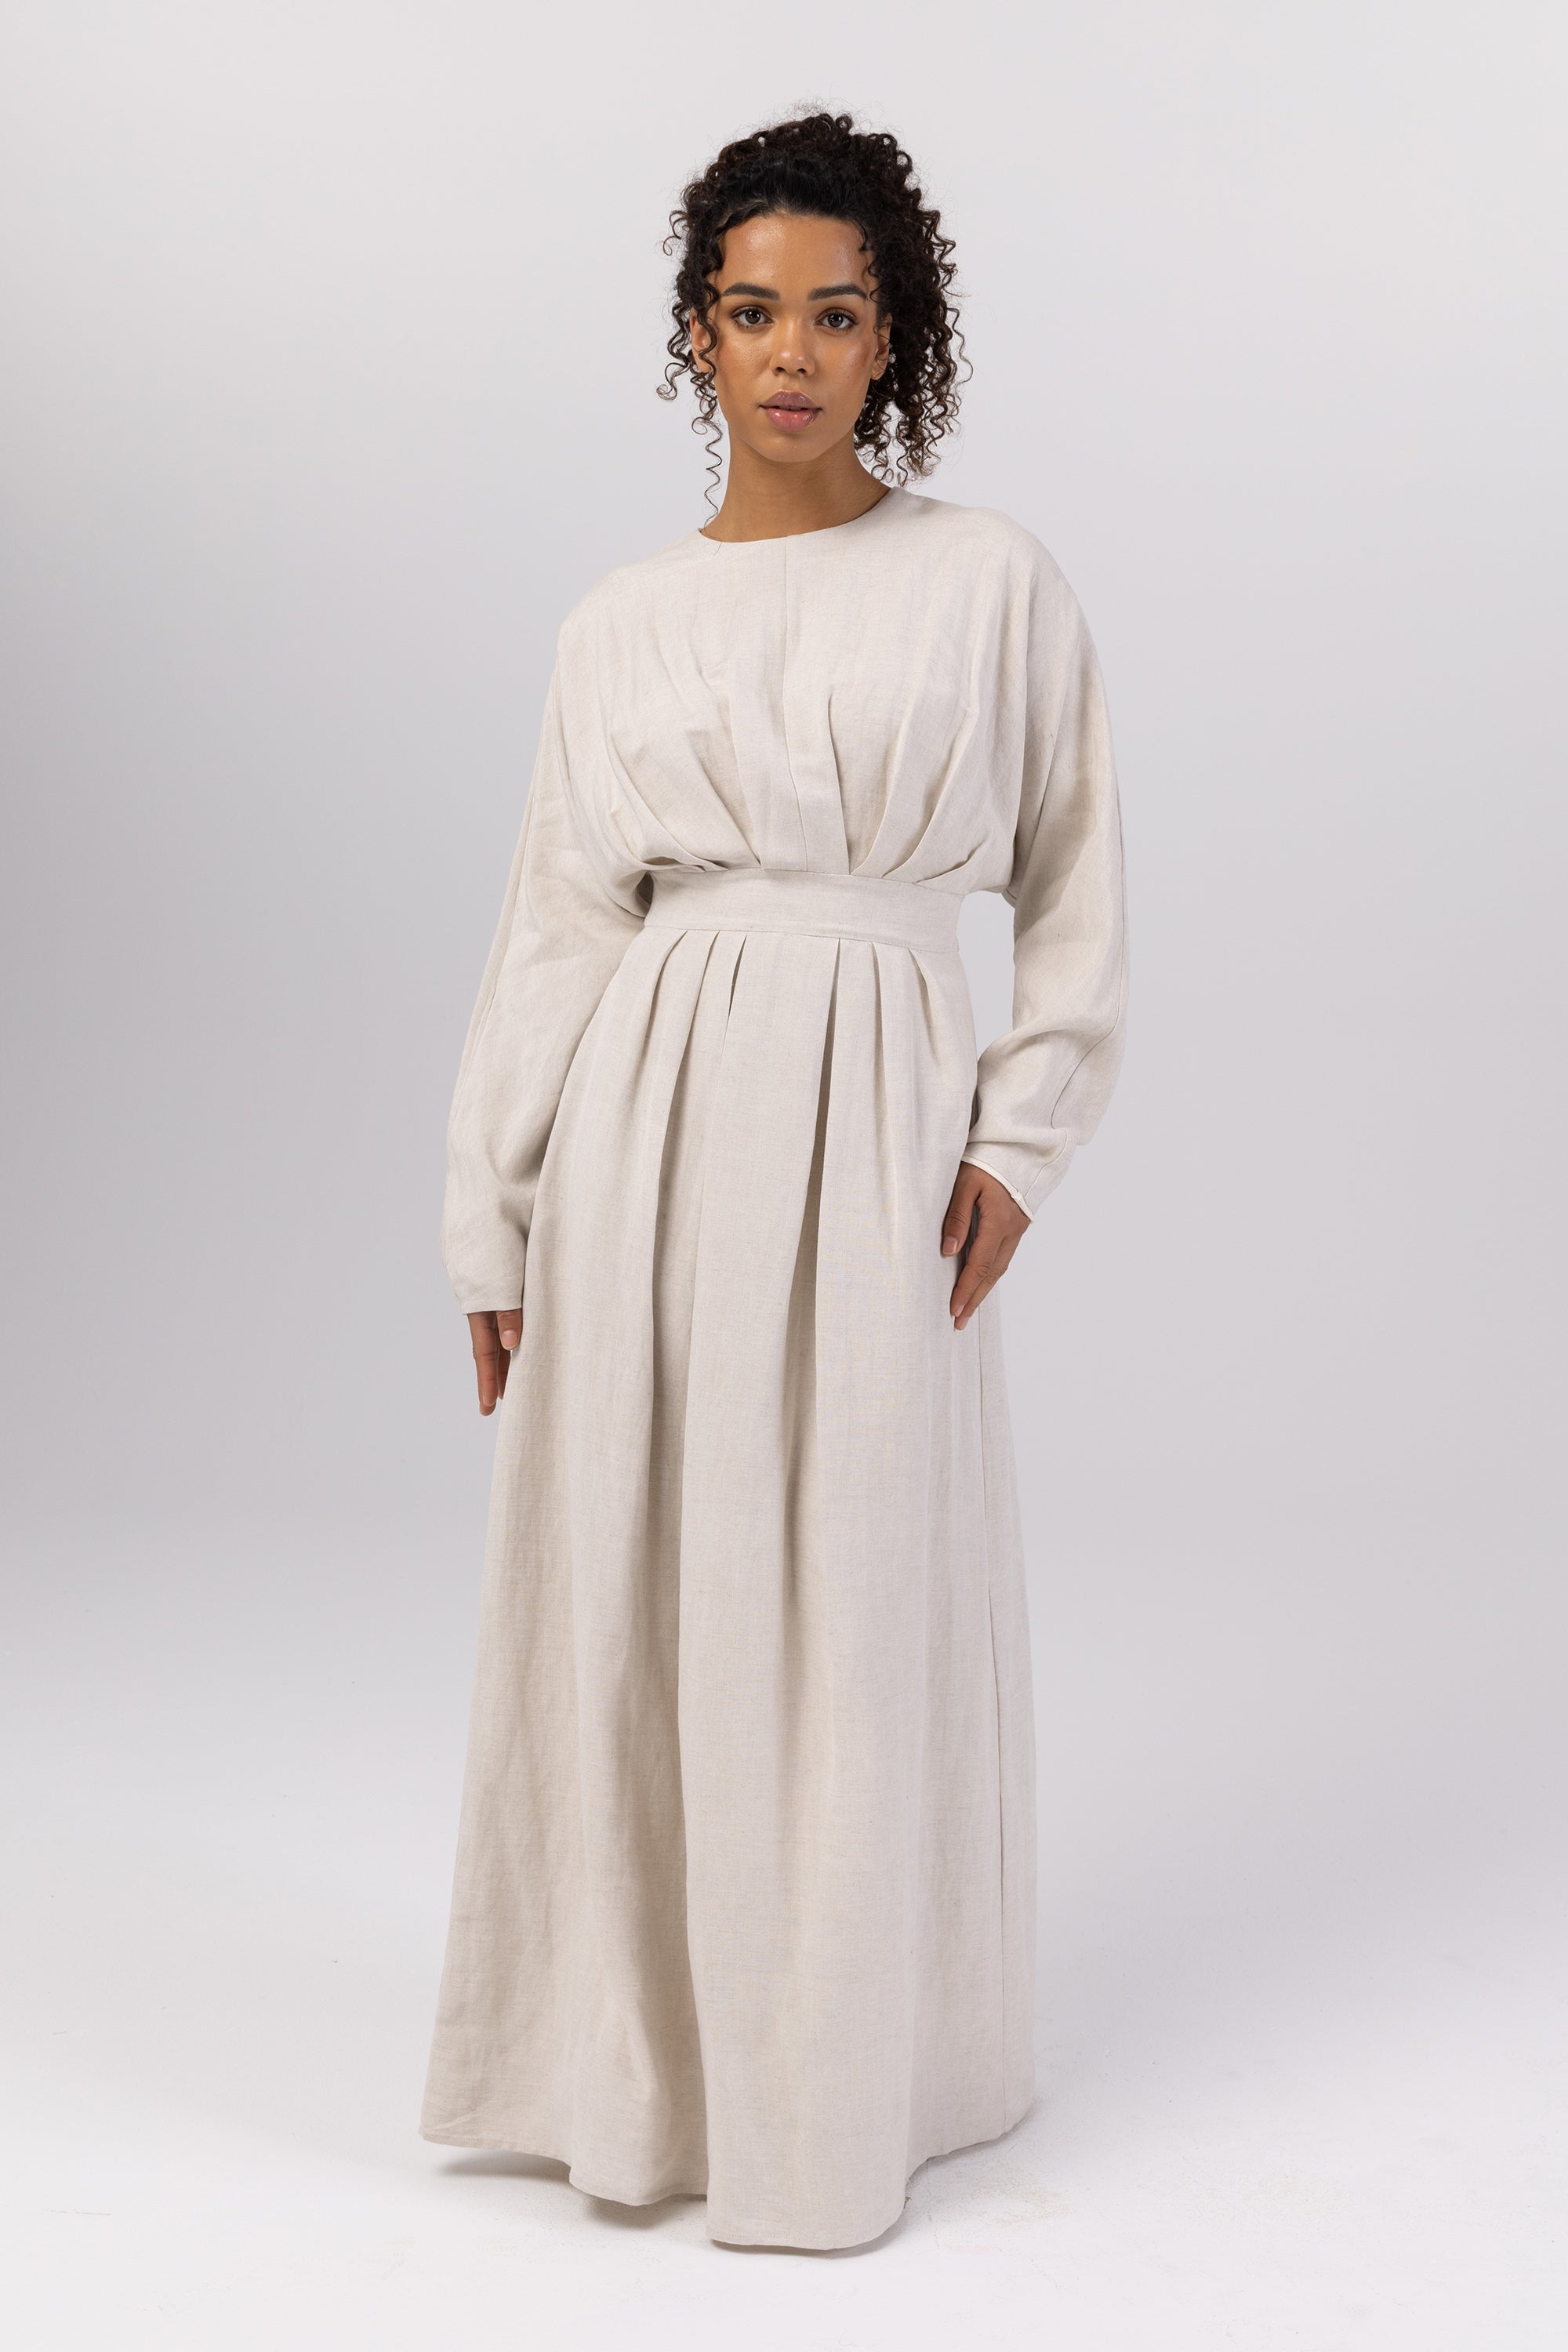 White Maxi Dress - Sleeveless Maxi Dress - White Gown - Lulus